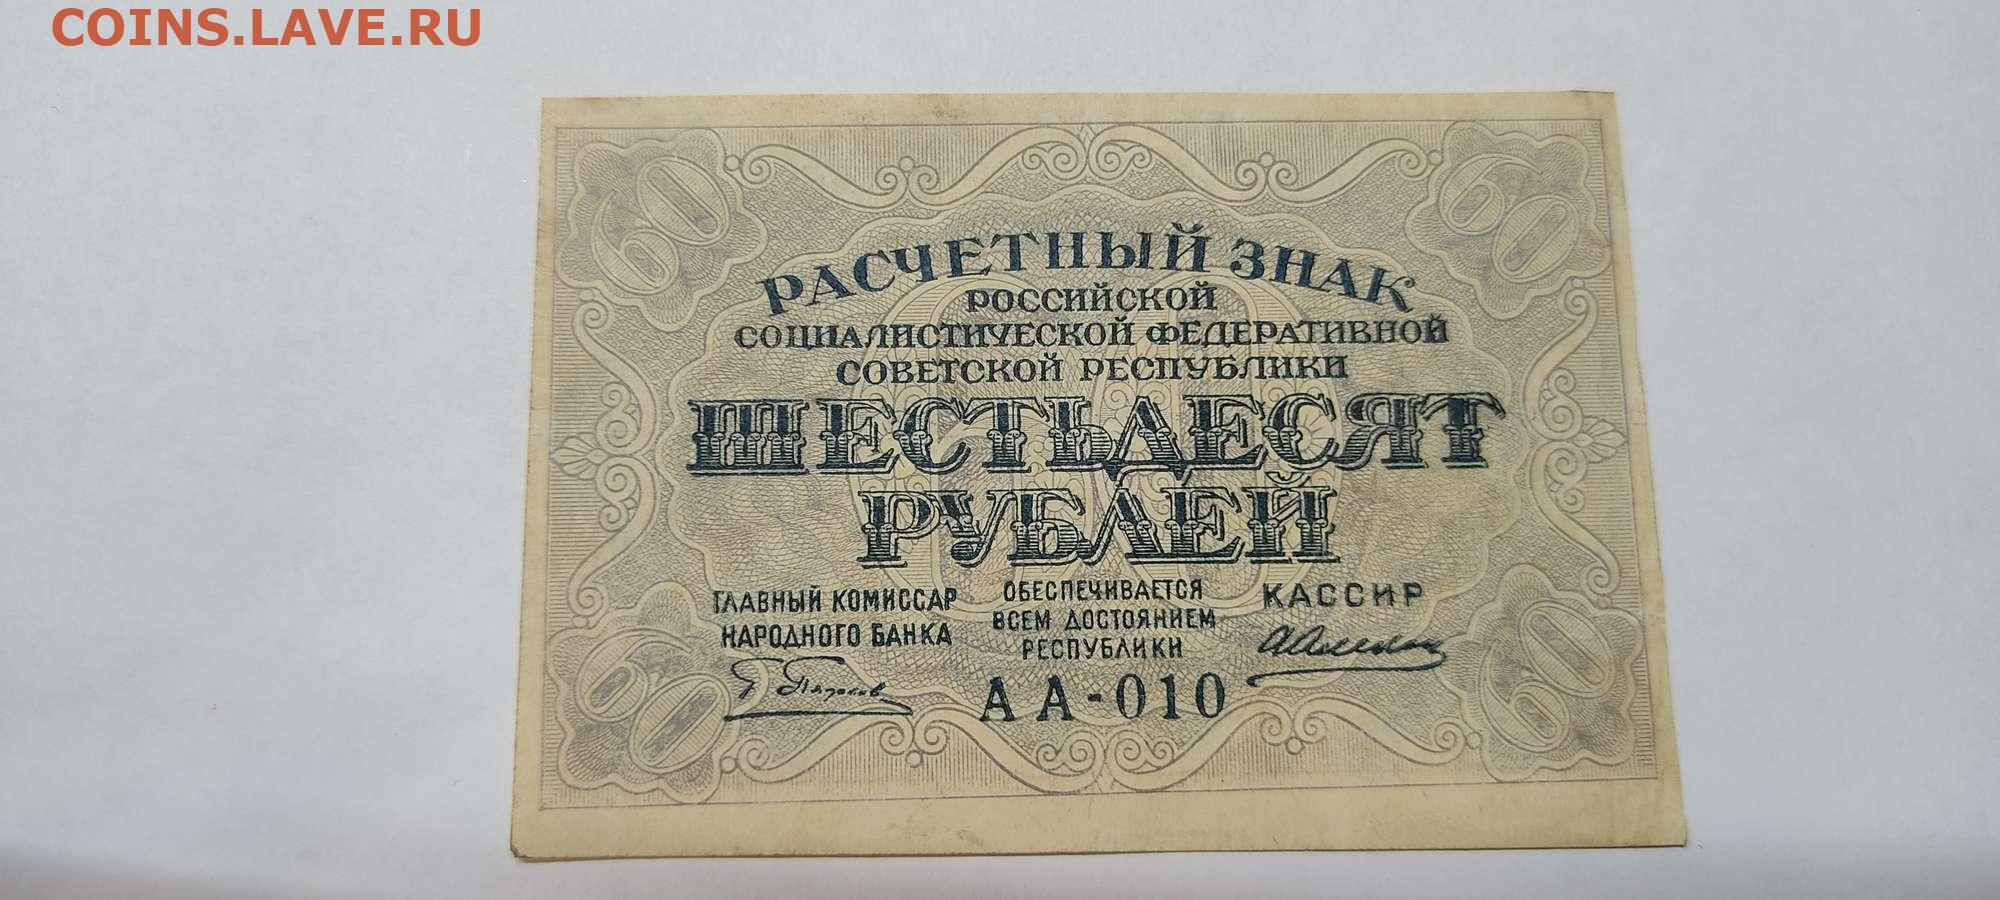 13 60 в рублях. Советские деньги 1919 года. 60 Рублей 1919 года. Расчетный знак 60 рублей. Купюра 60 рублей РСФСР.